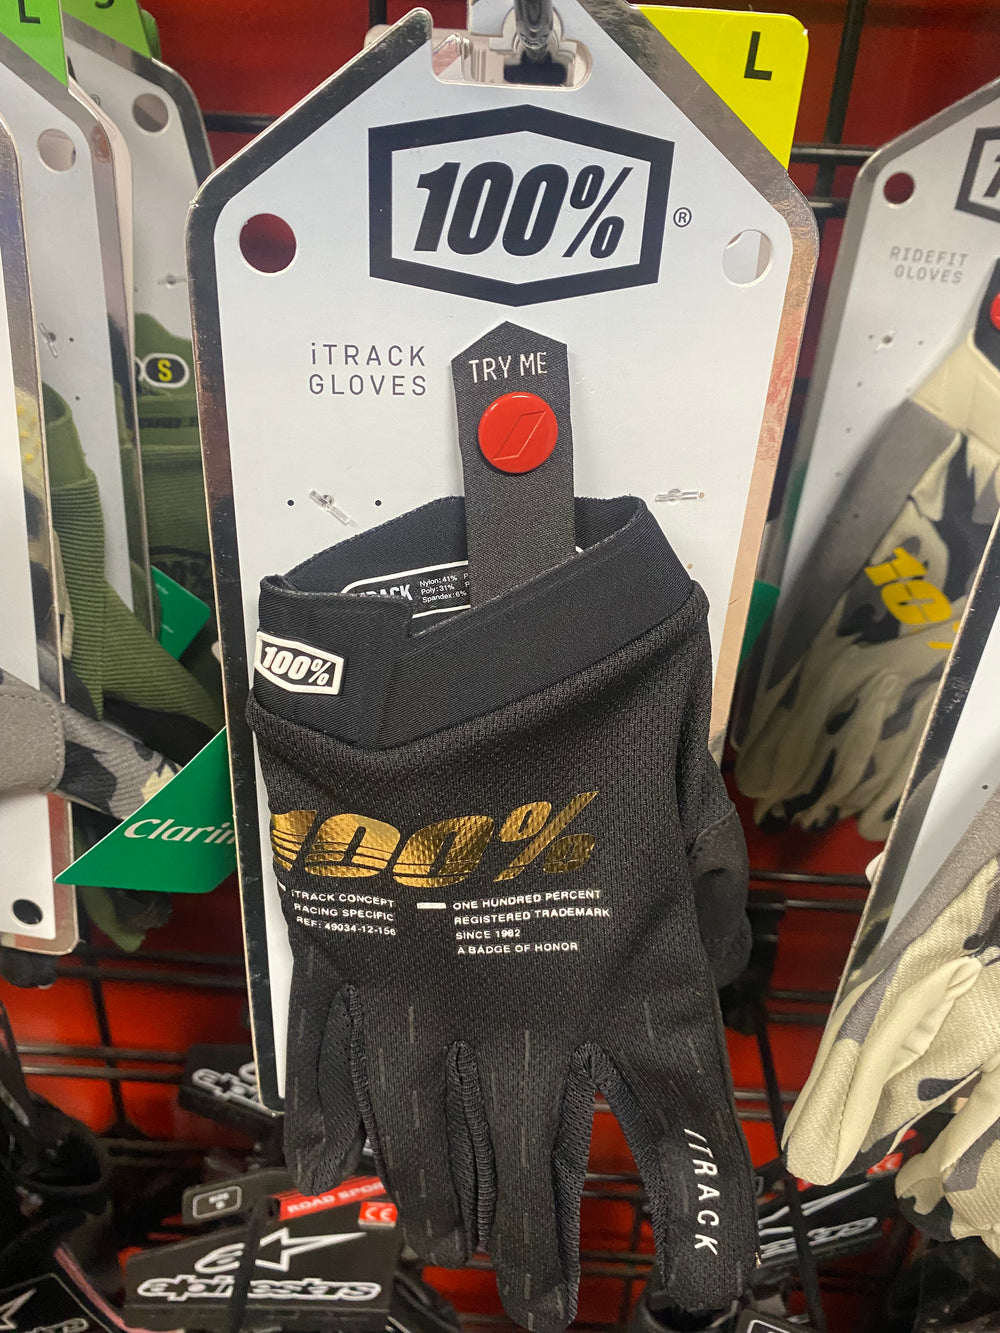 100% iTRACK Gloves